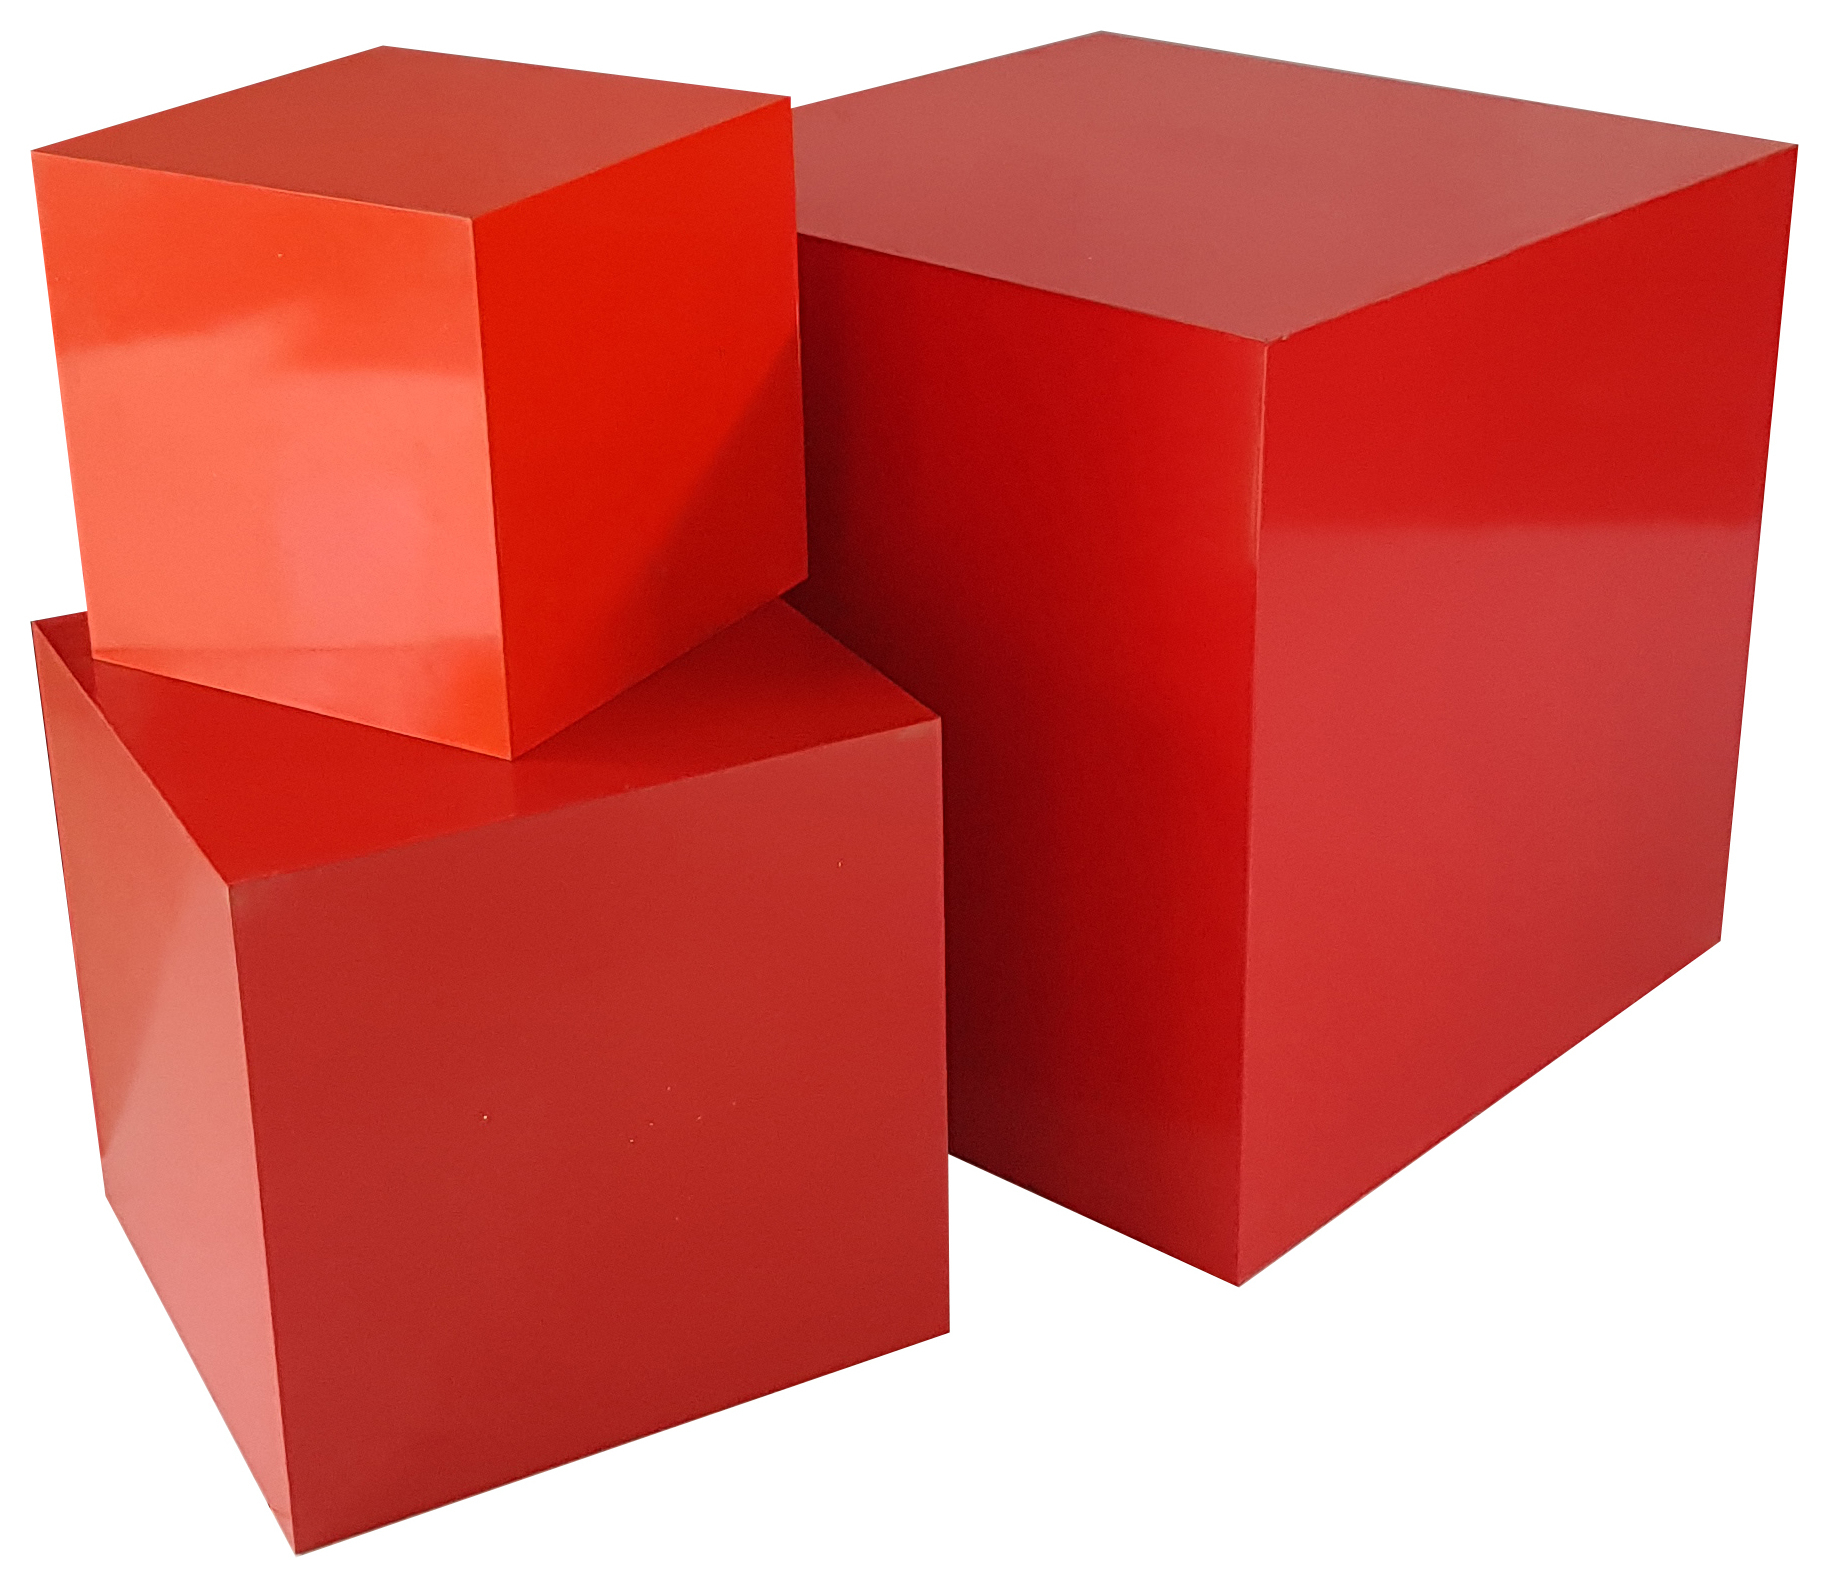 Https cub red download. Красный куб. Куб. Кубик красного цвета. Коробка куб красный.